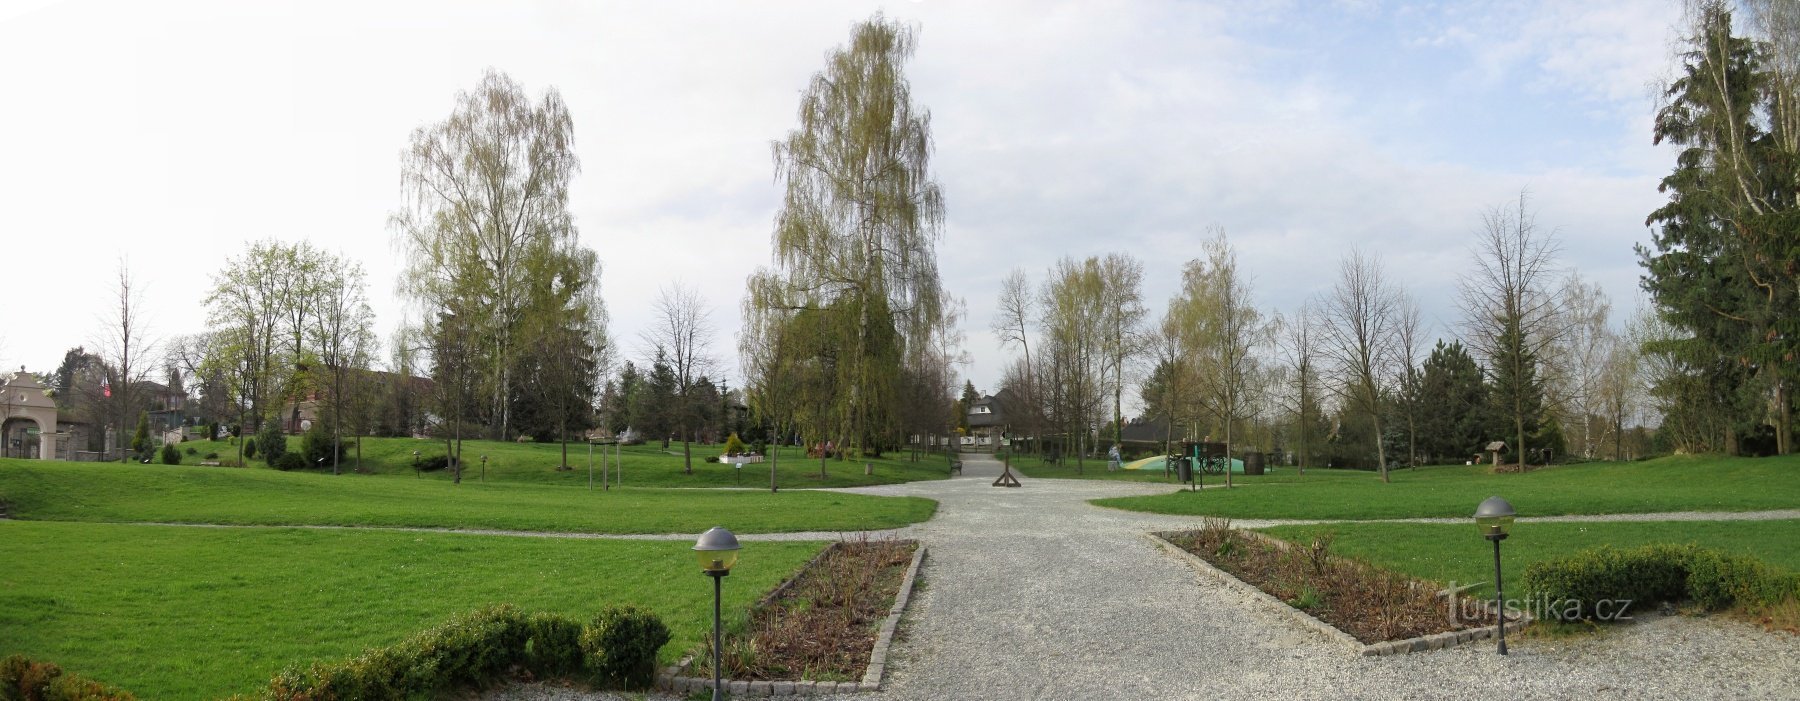 Kunice - Berchtold slot, en park med miniatureslotte og en uddannelsessti